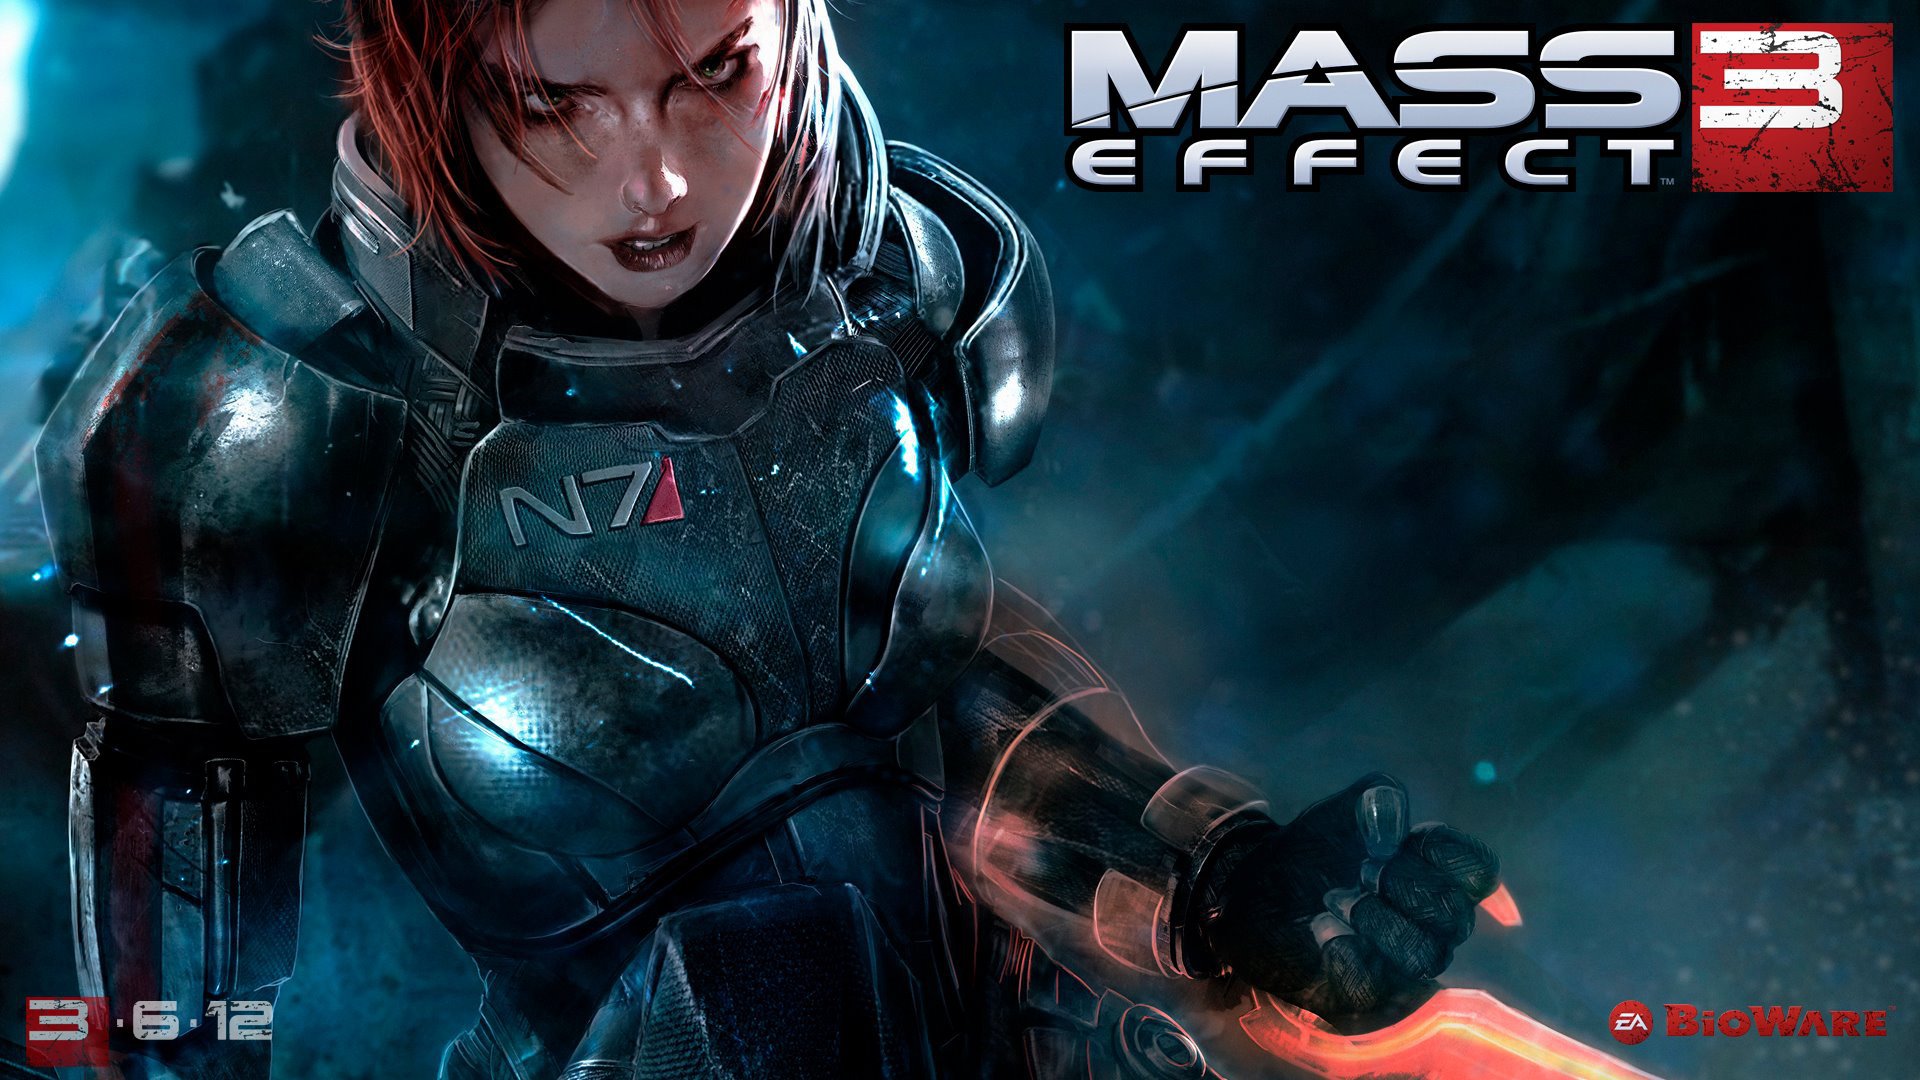 High Resolution Wallpaper | Mass Effect 3 1920x1080 px